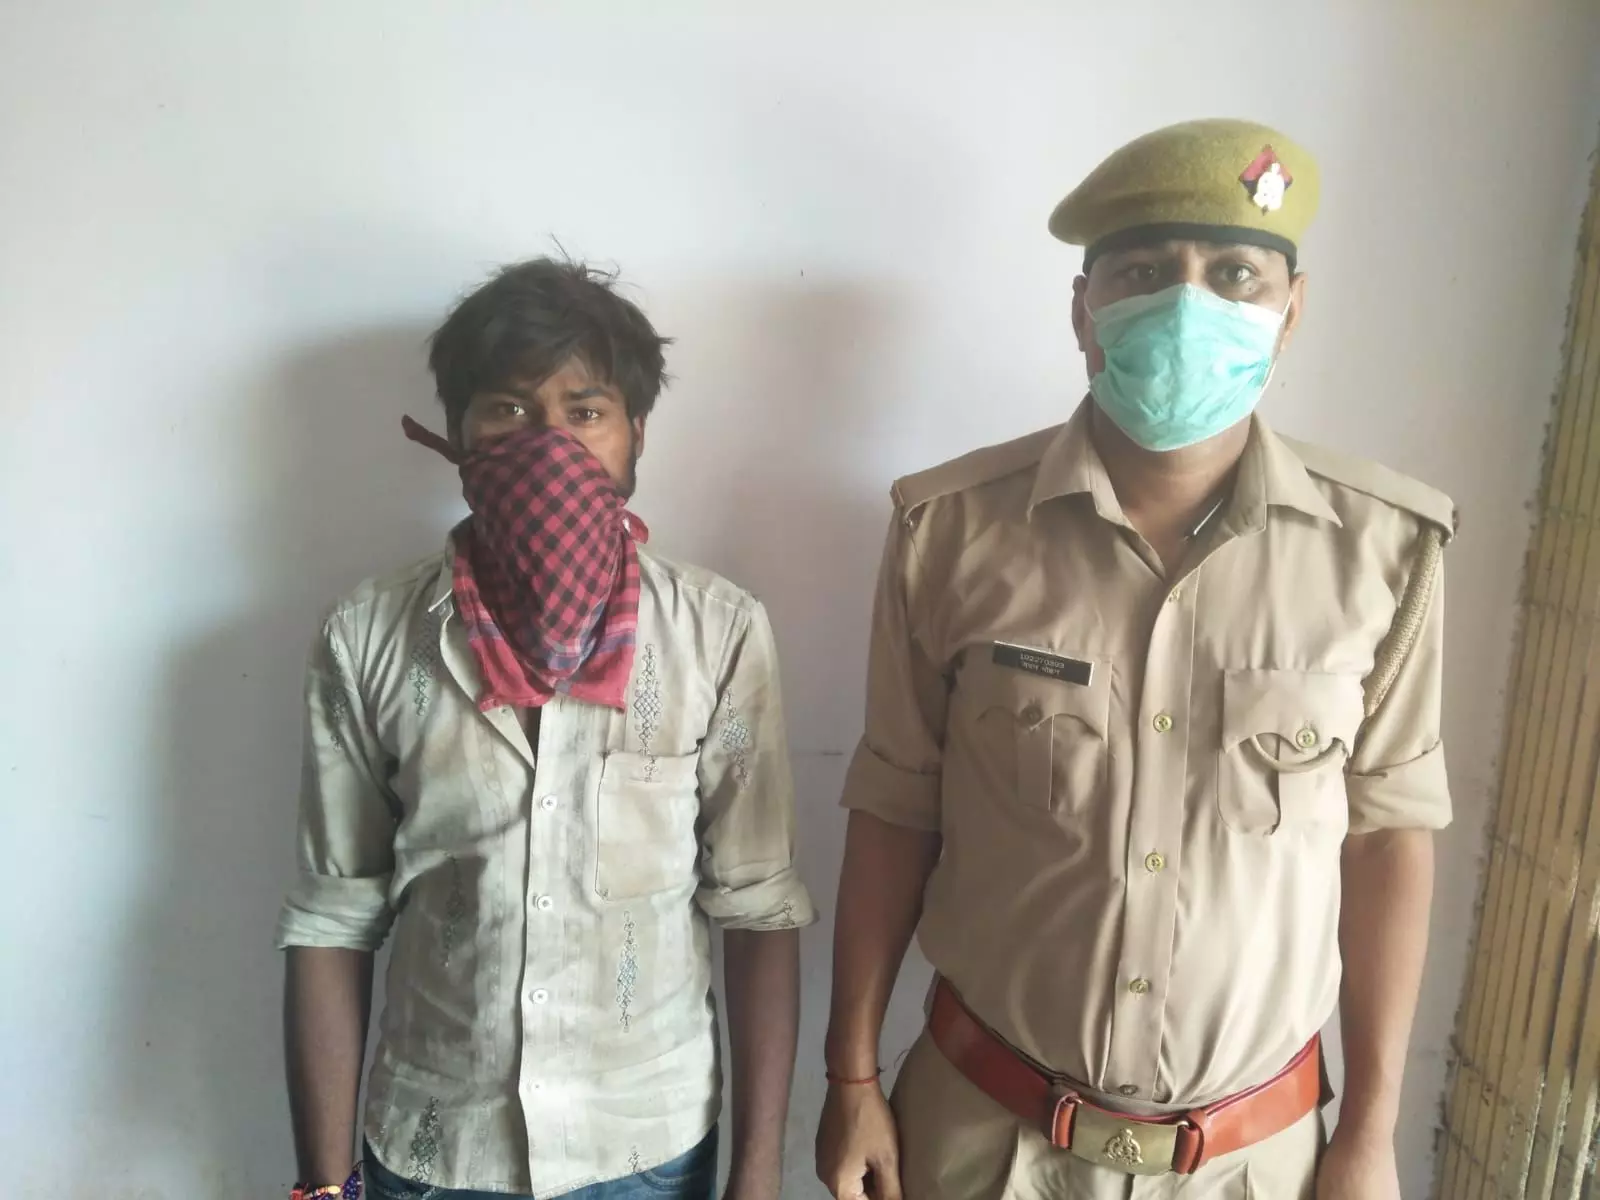 दो थाना क्षेत्रों से दुष्कर्म के आरोपी गिरफ्तार